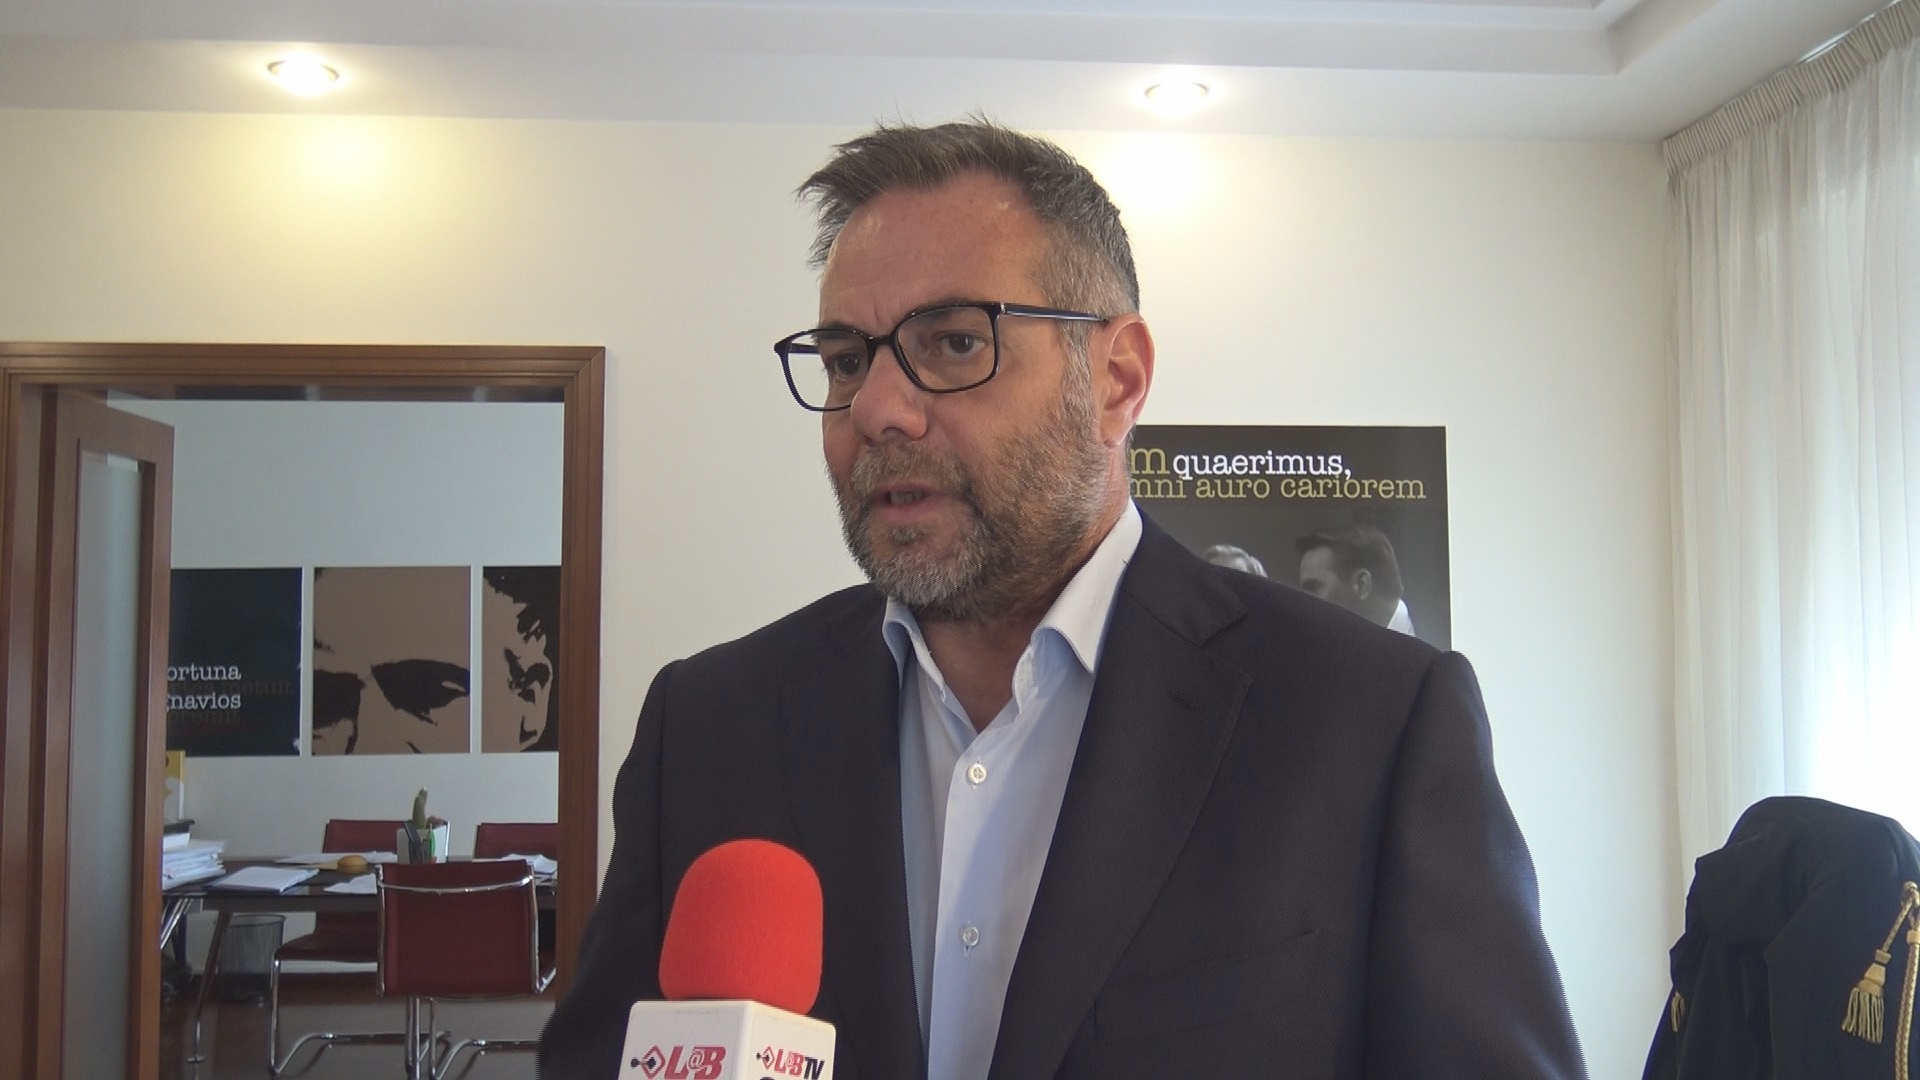 Benevento| FI, Vizzi Sguera: “confermo le dimissioni da coordinatore, resto consigliere